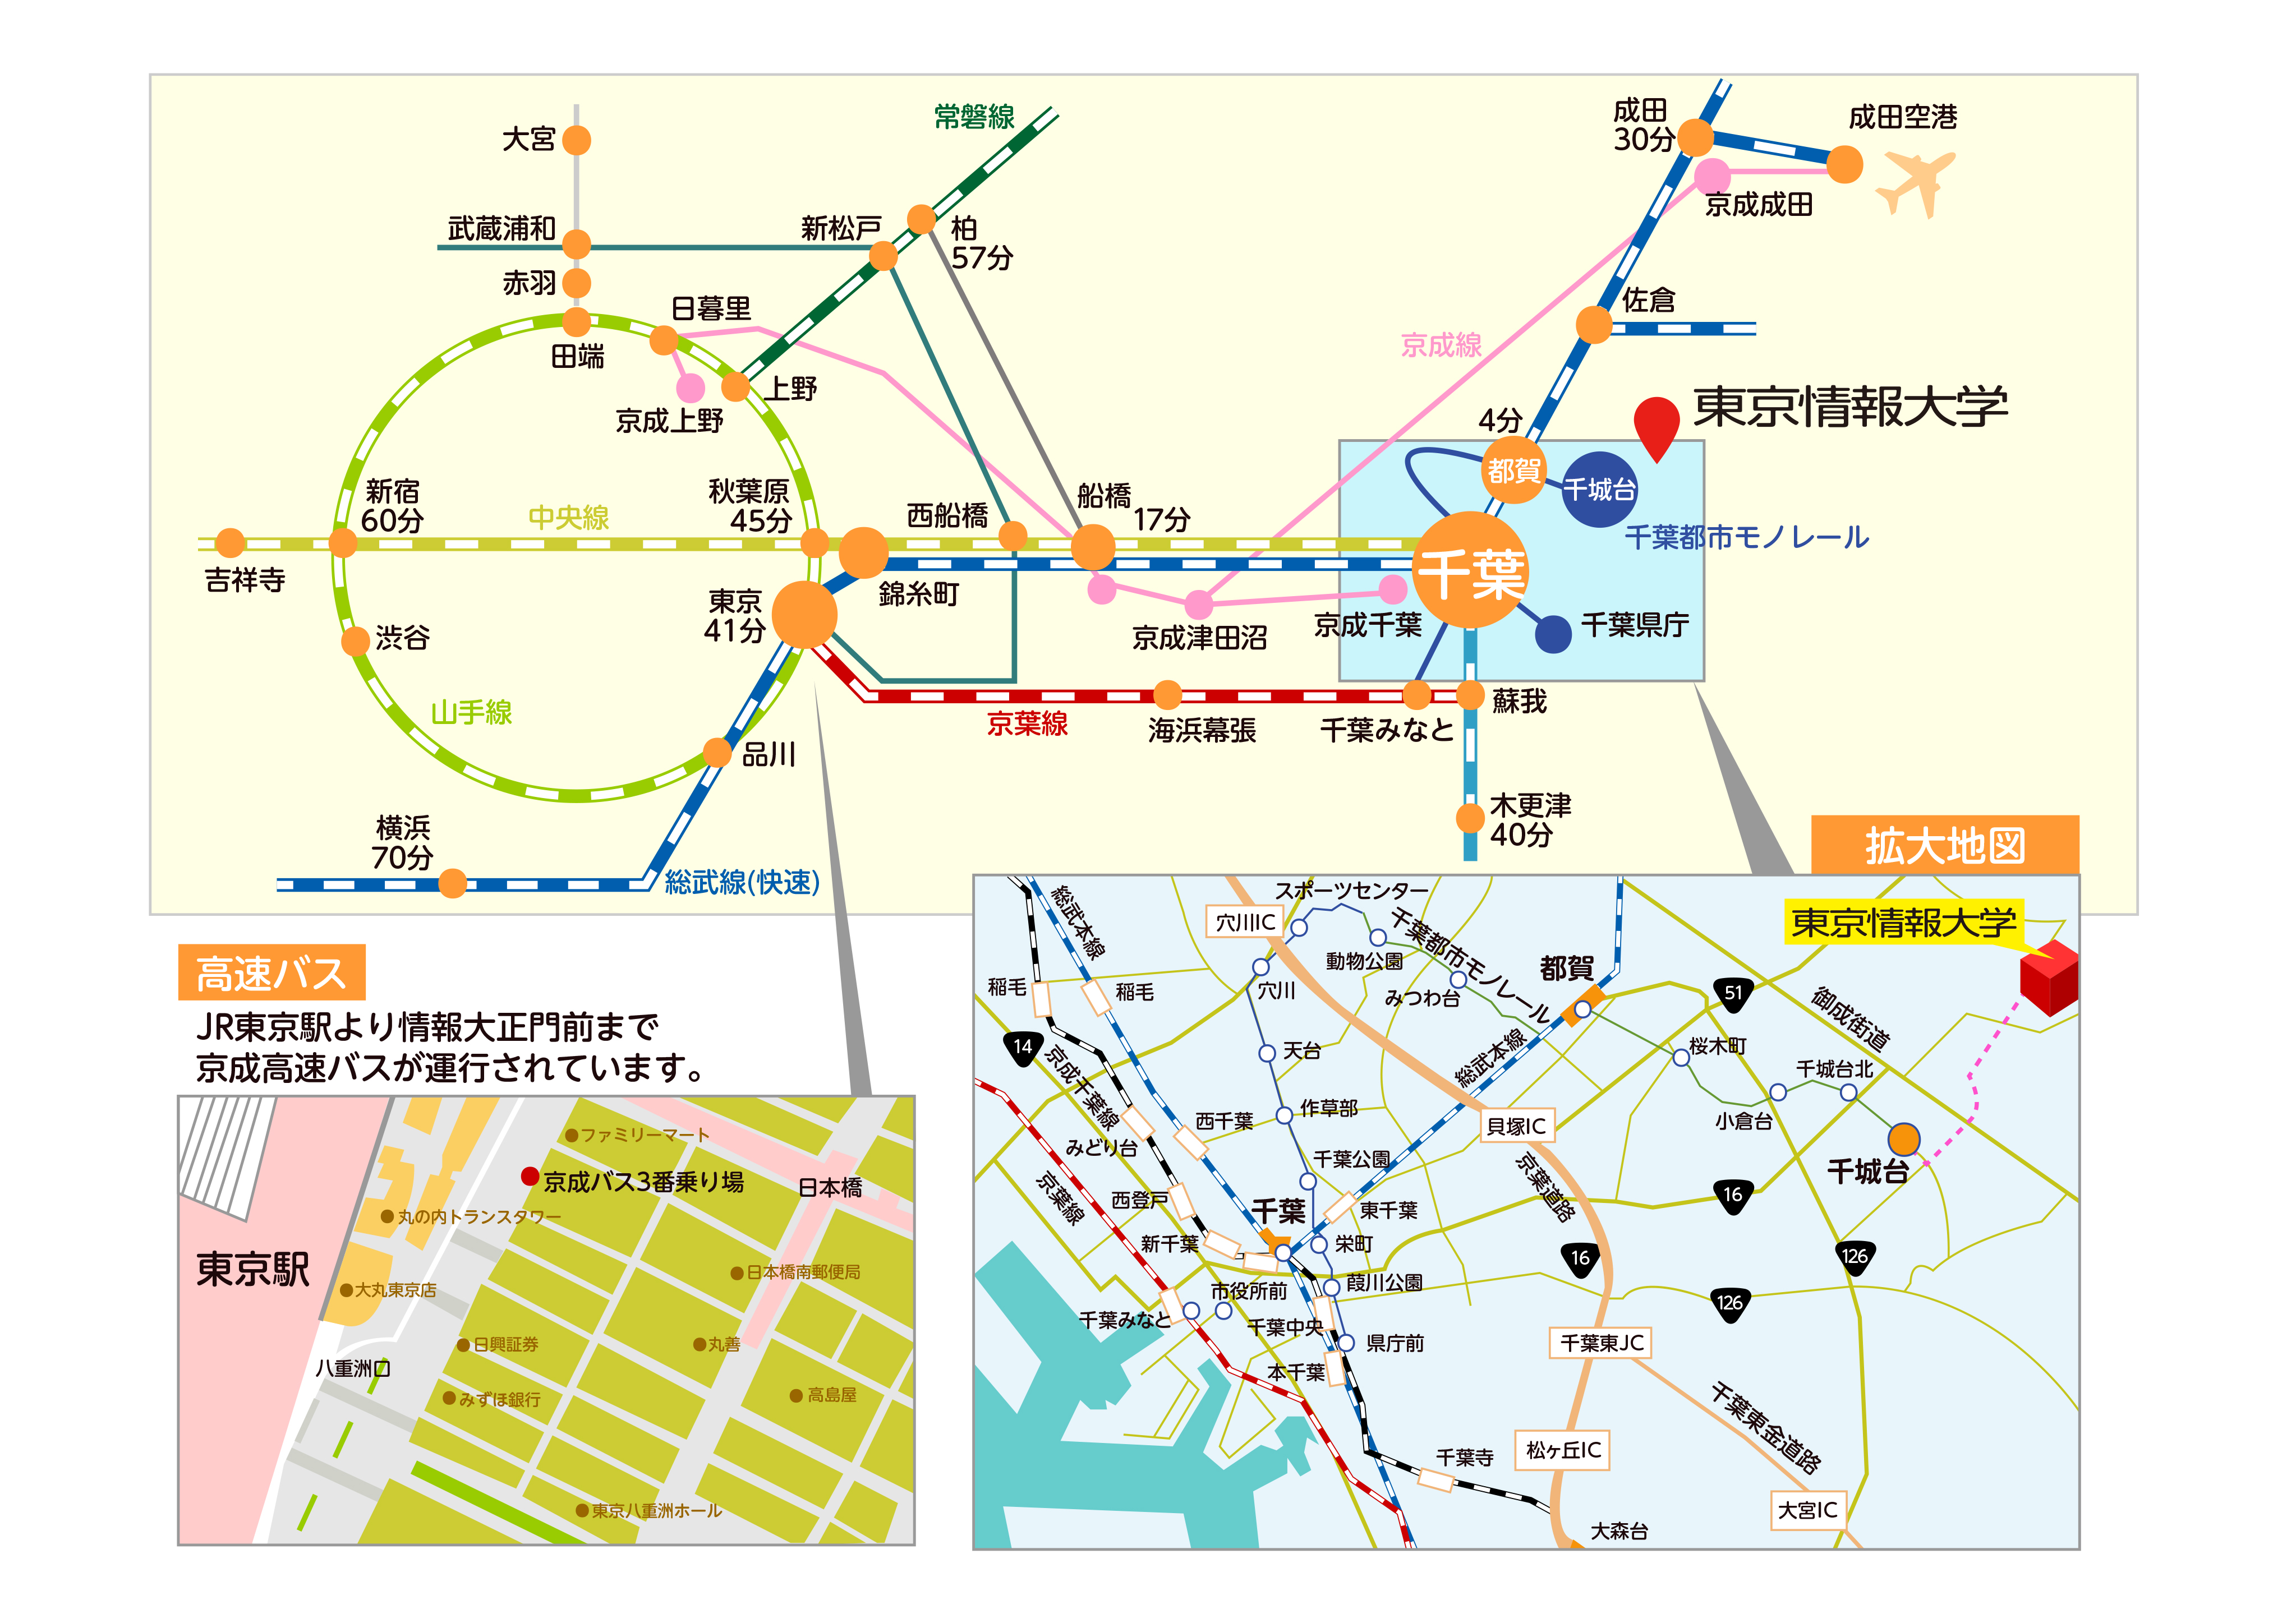 東京情報大学アクセスマップ拡大版